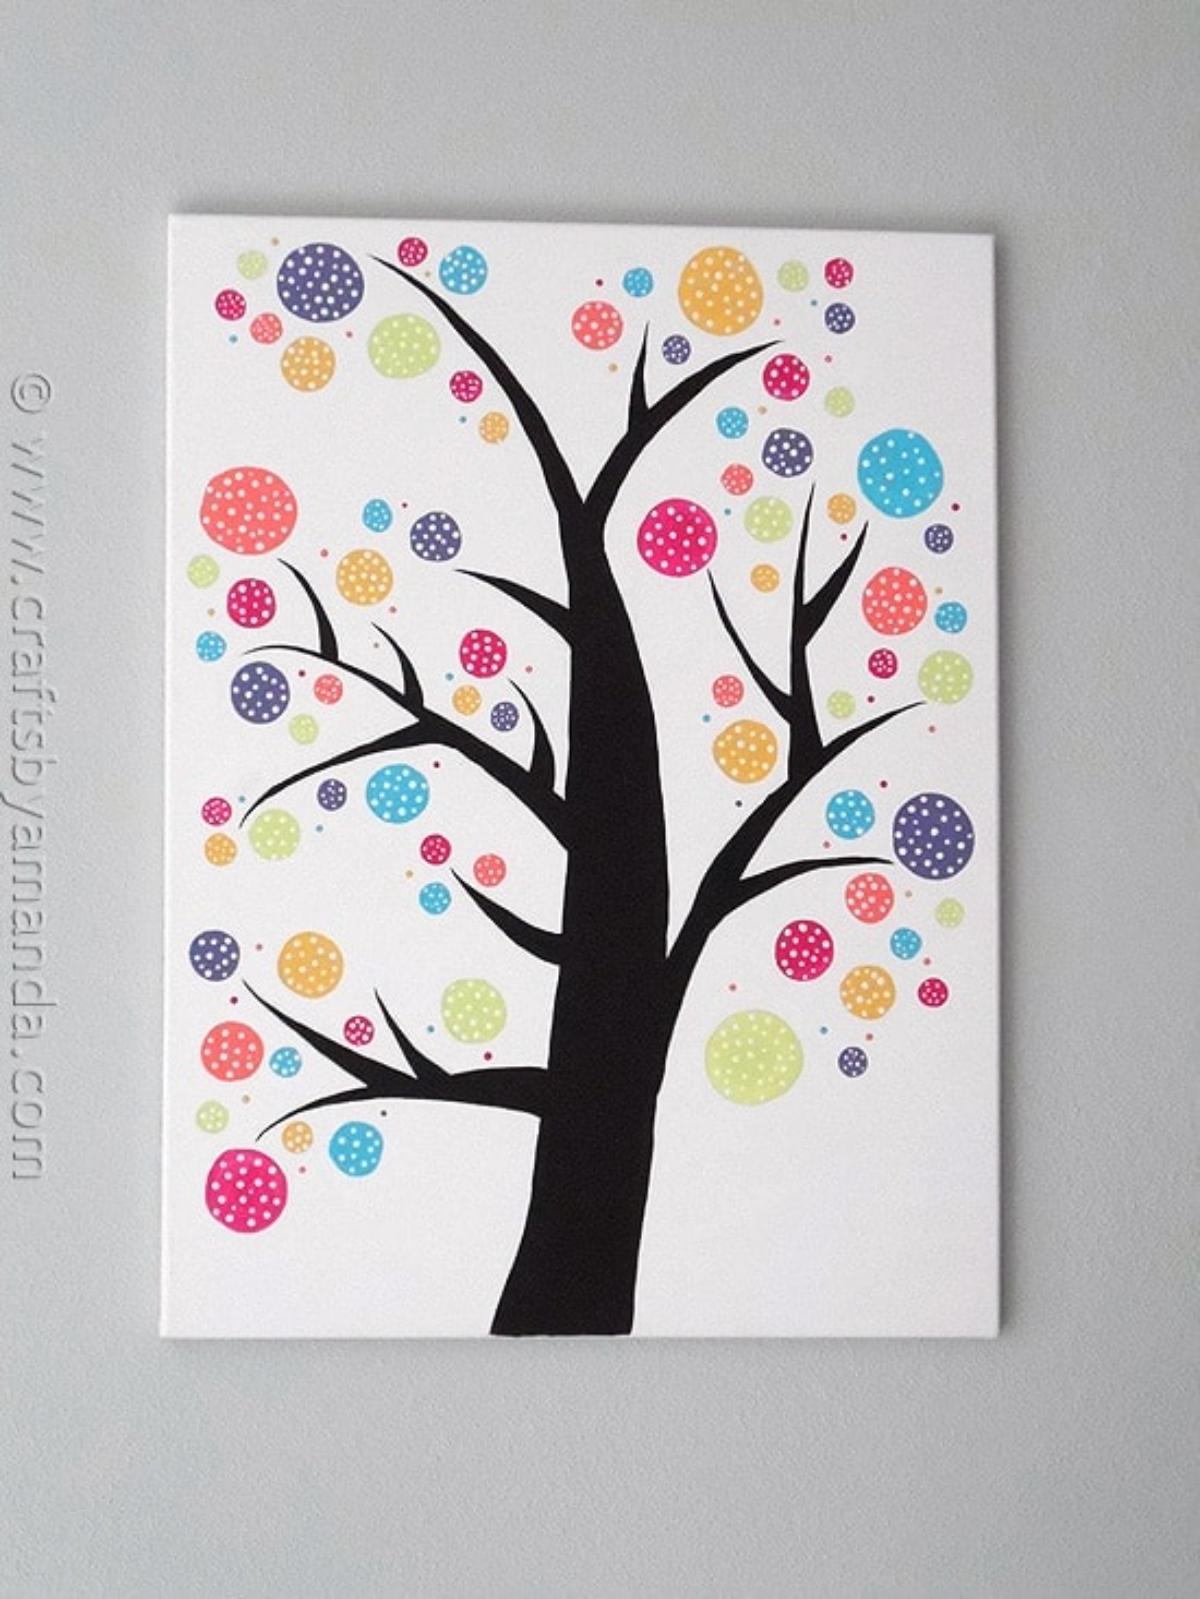 Polka Dot Circle Tree Wall Art